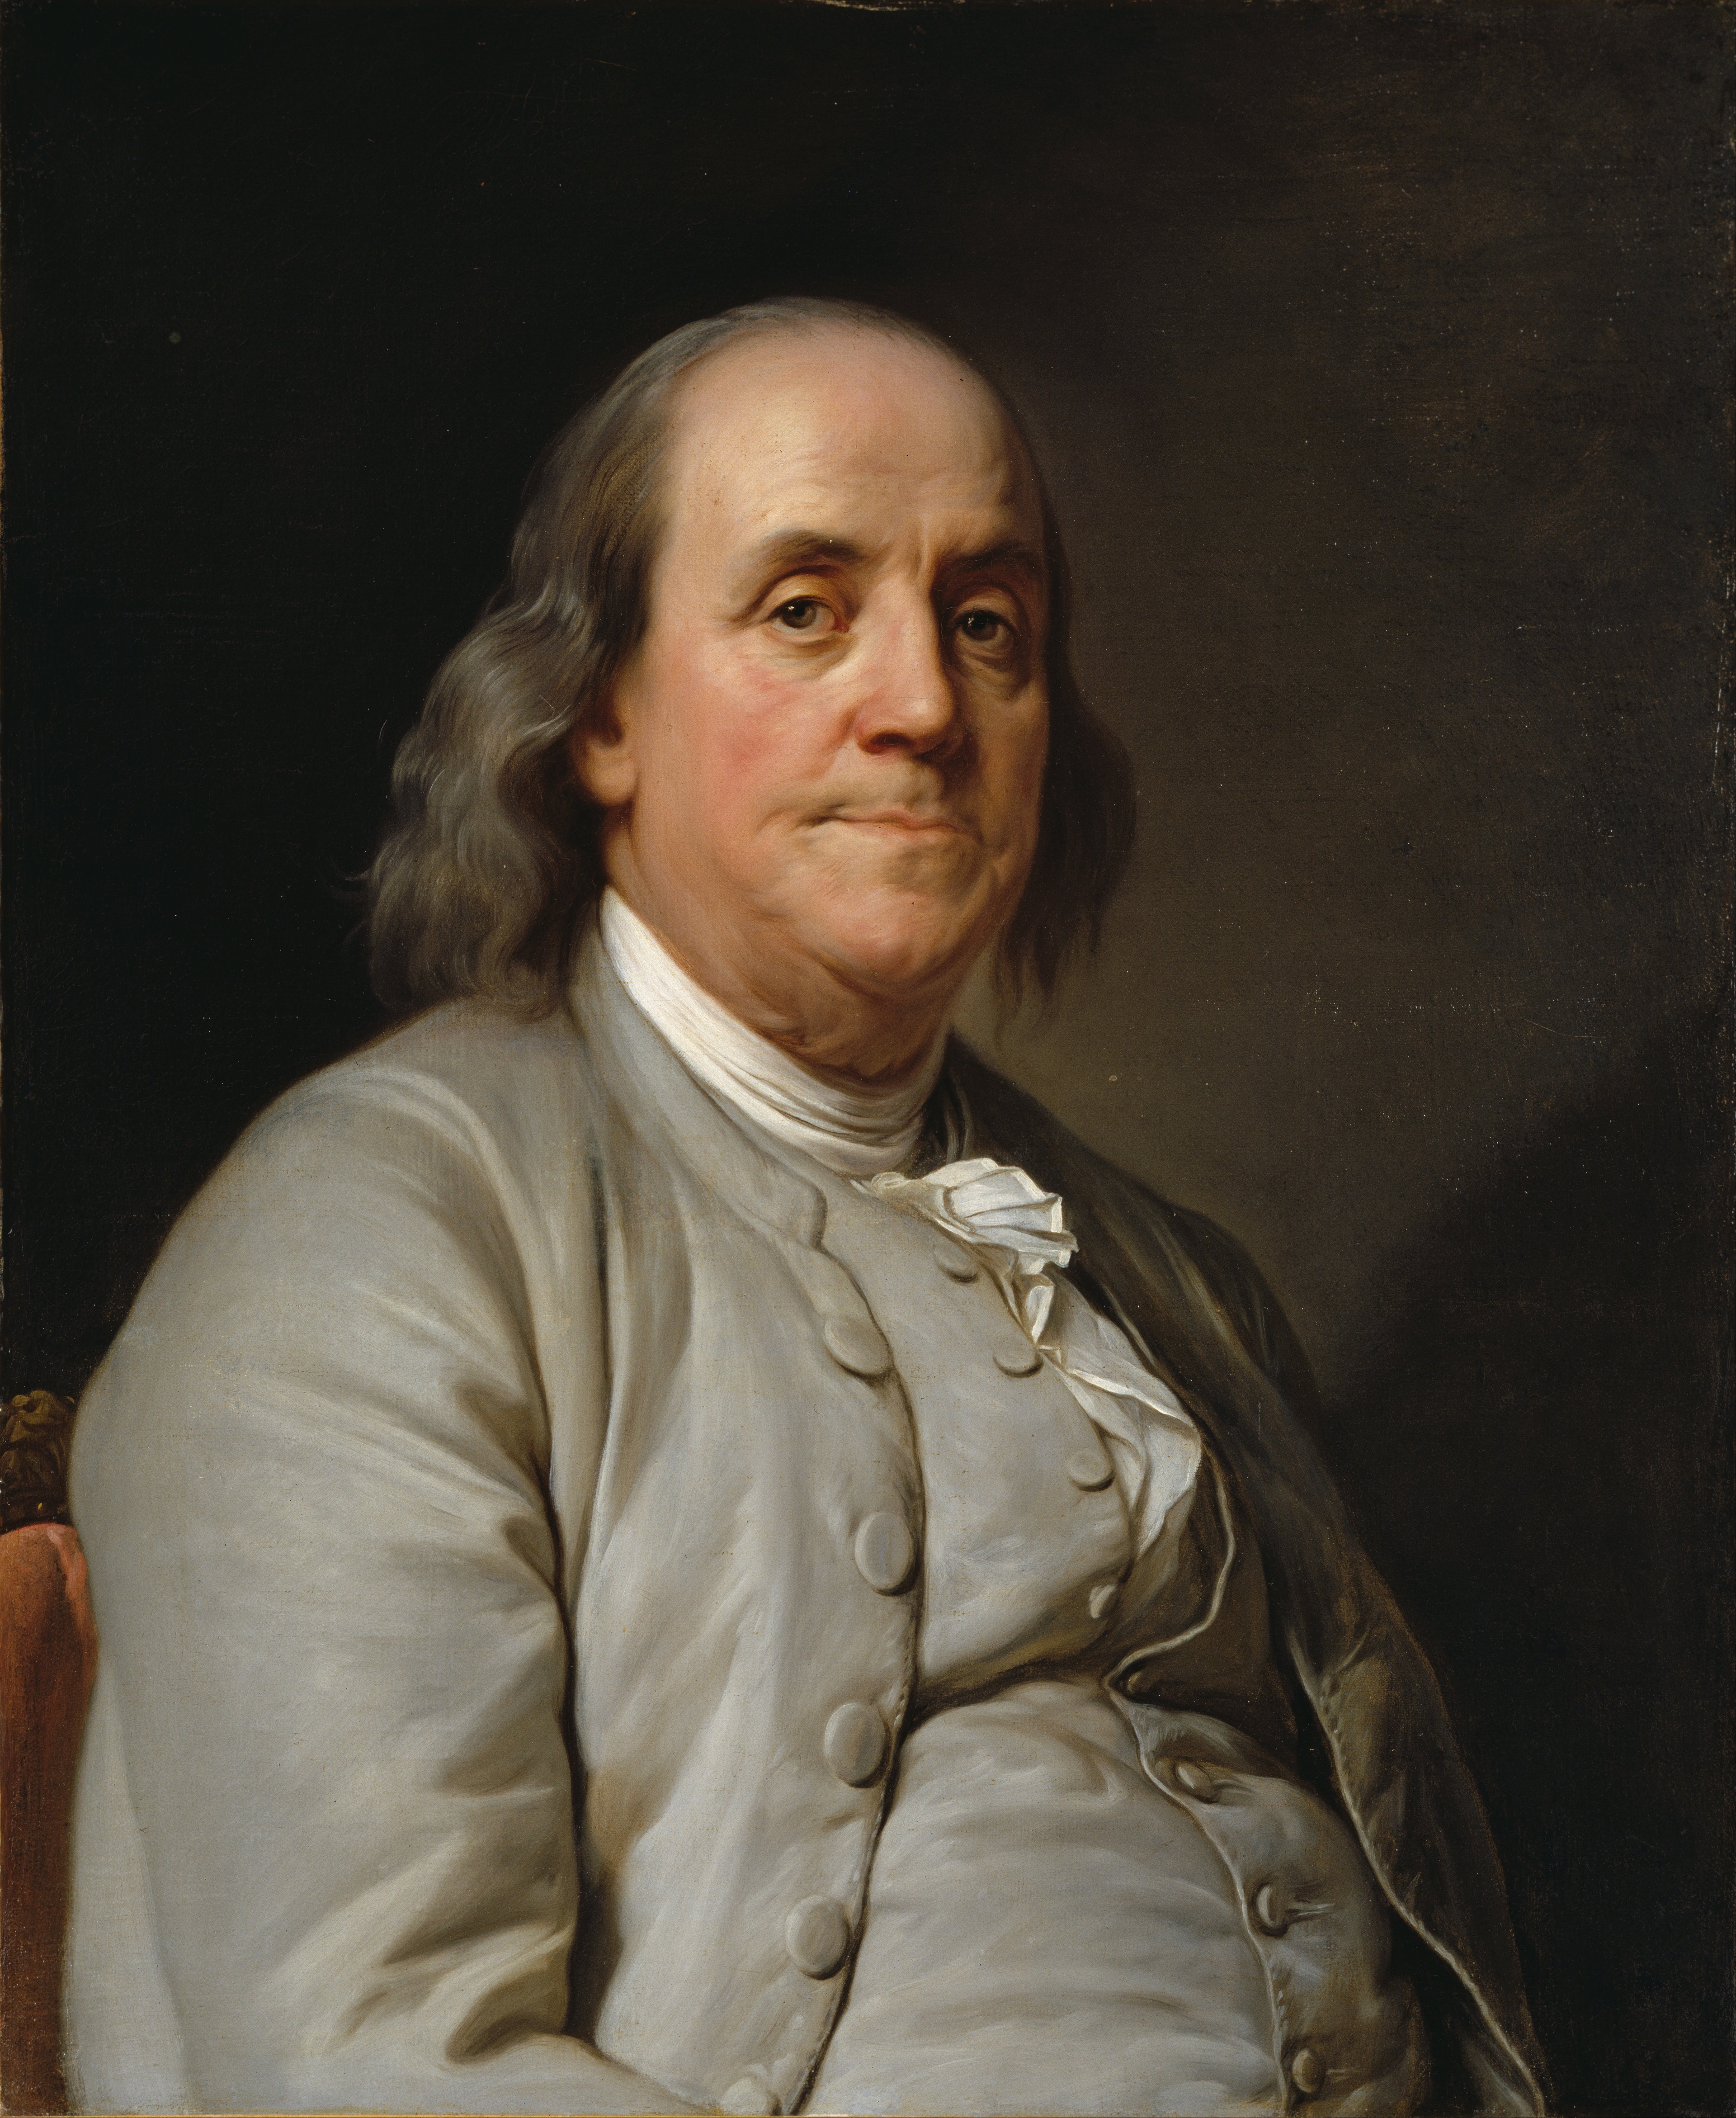 auteur Benjamin Franklin de la citation Dieu les aide qui s'aident eux-mêmes.